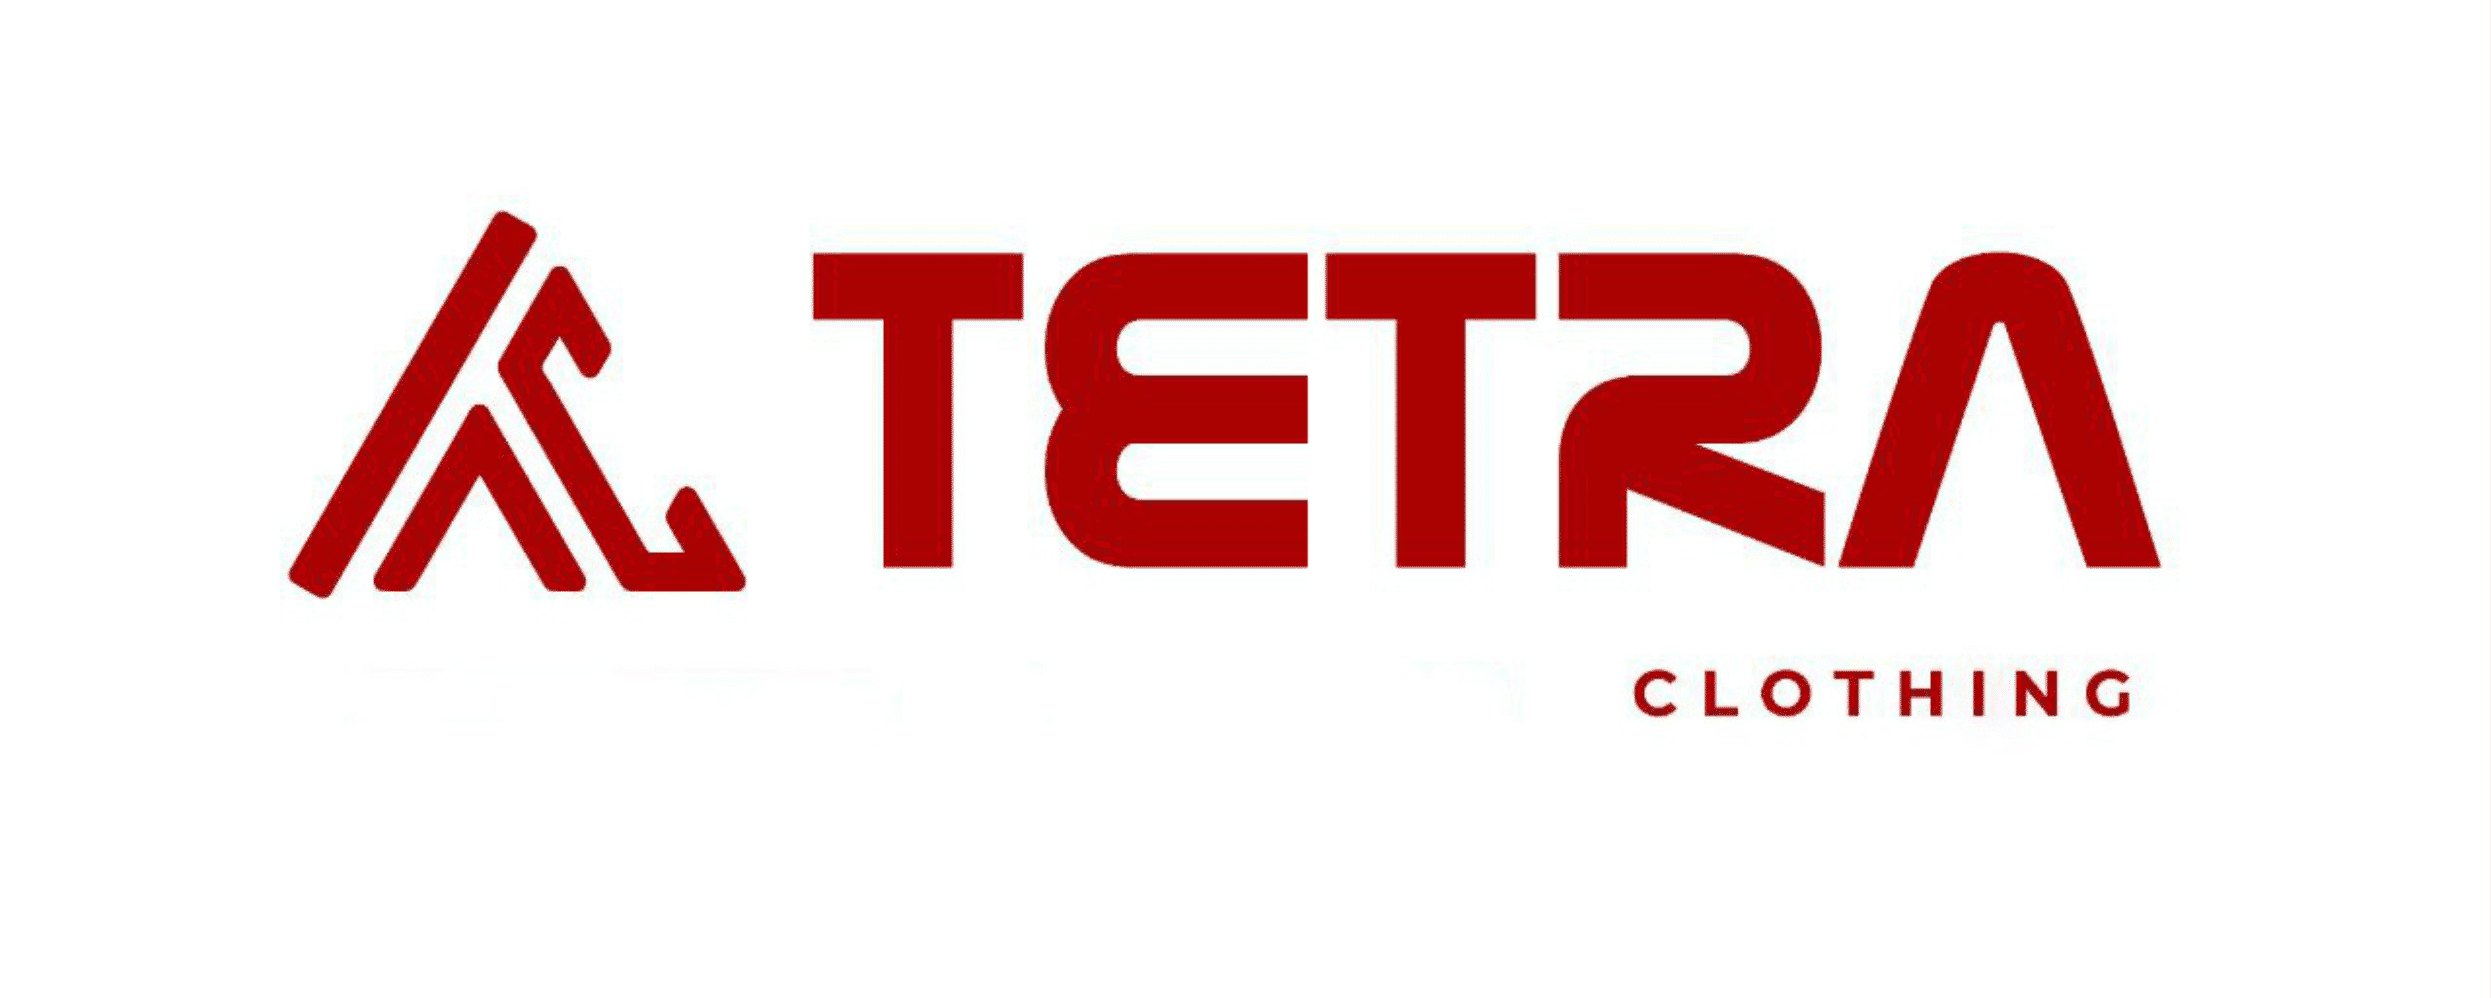 Tetra Clothings